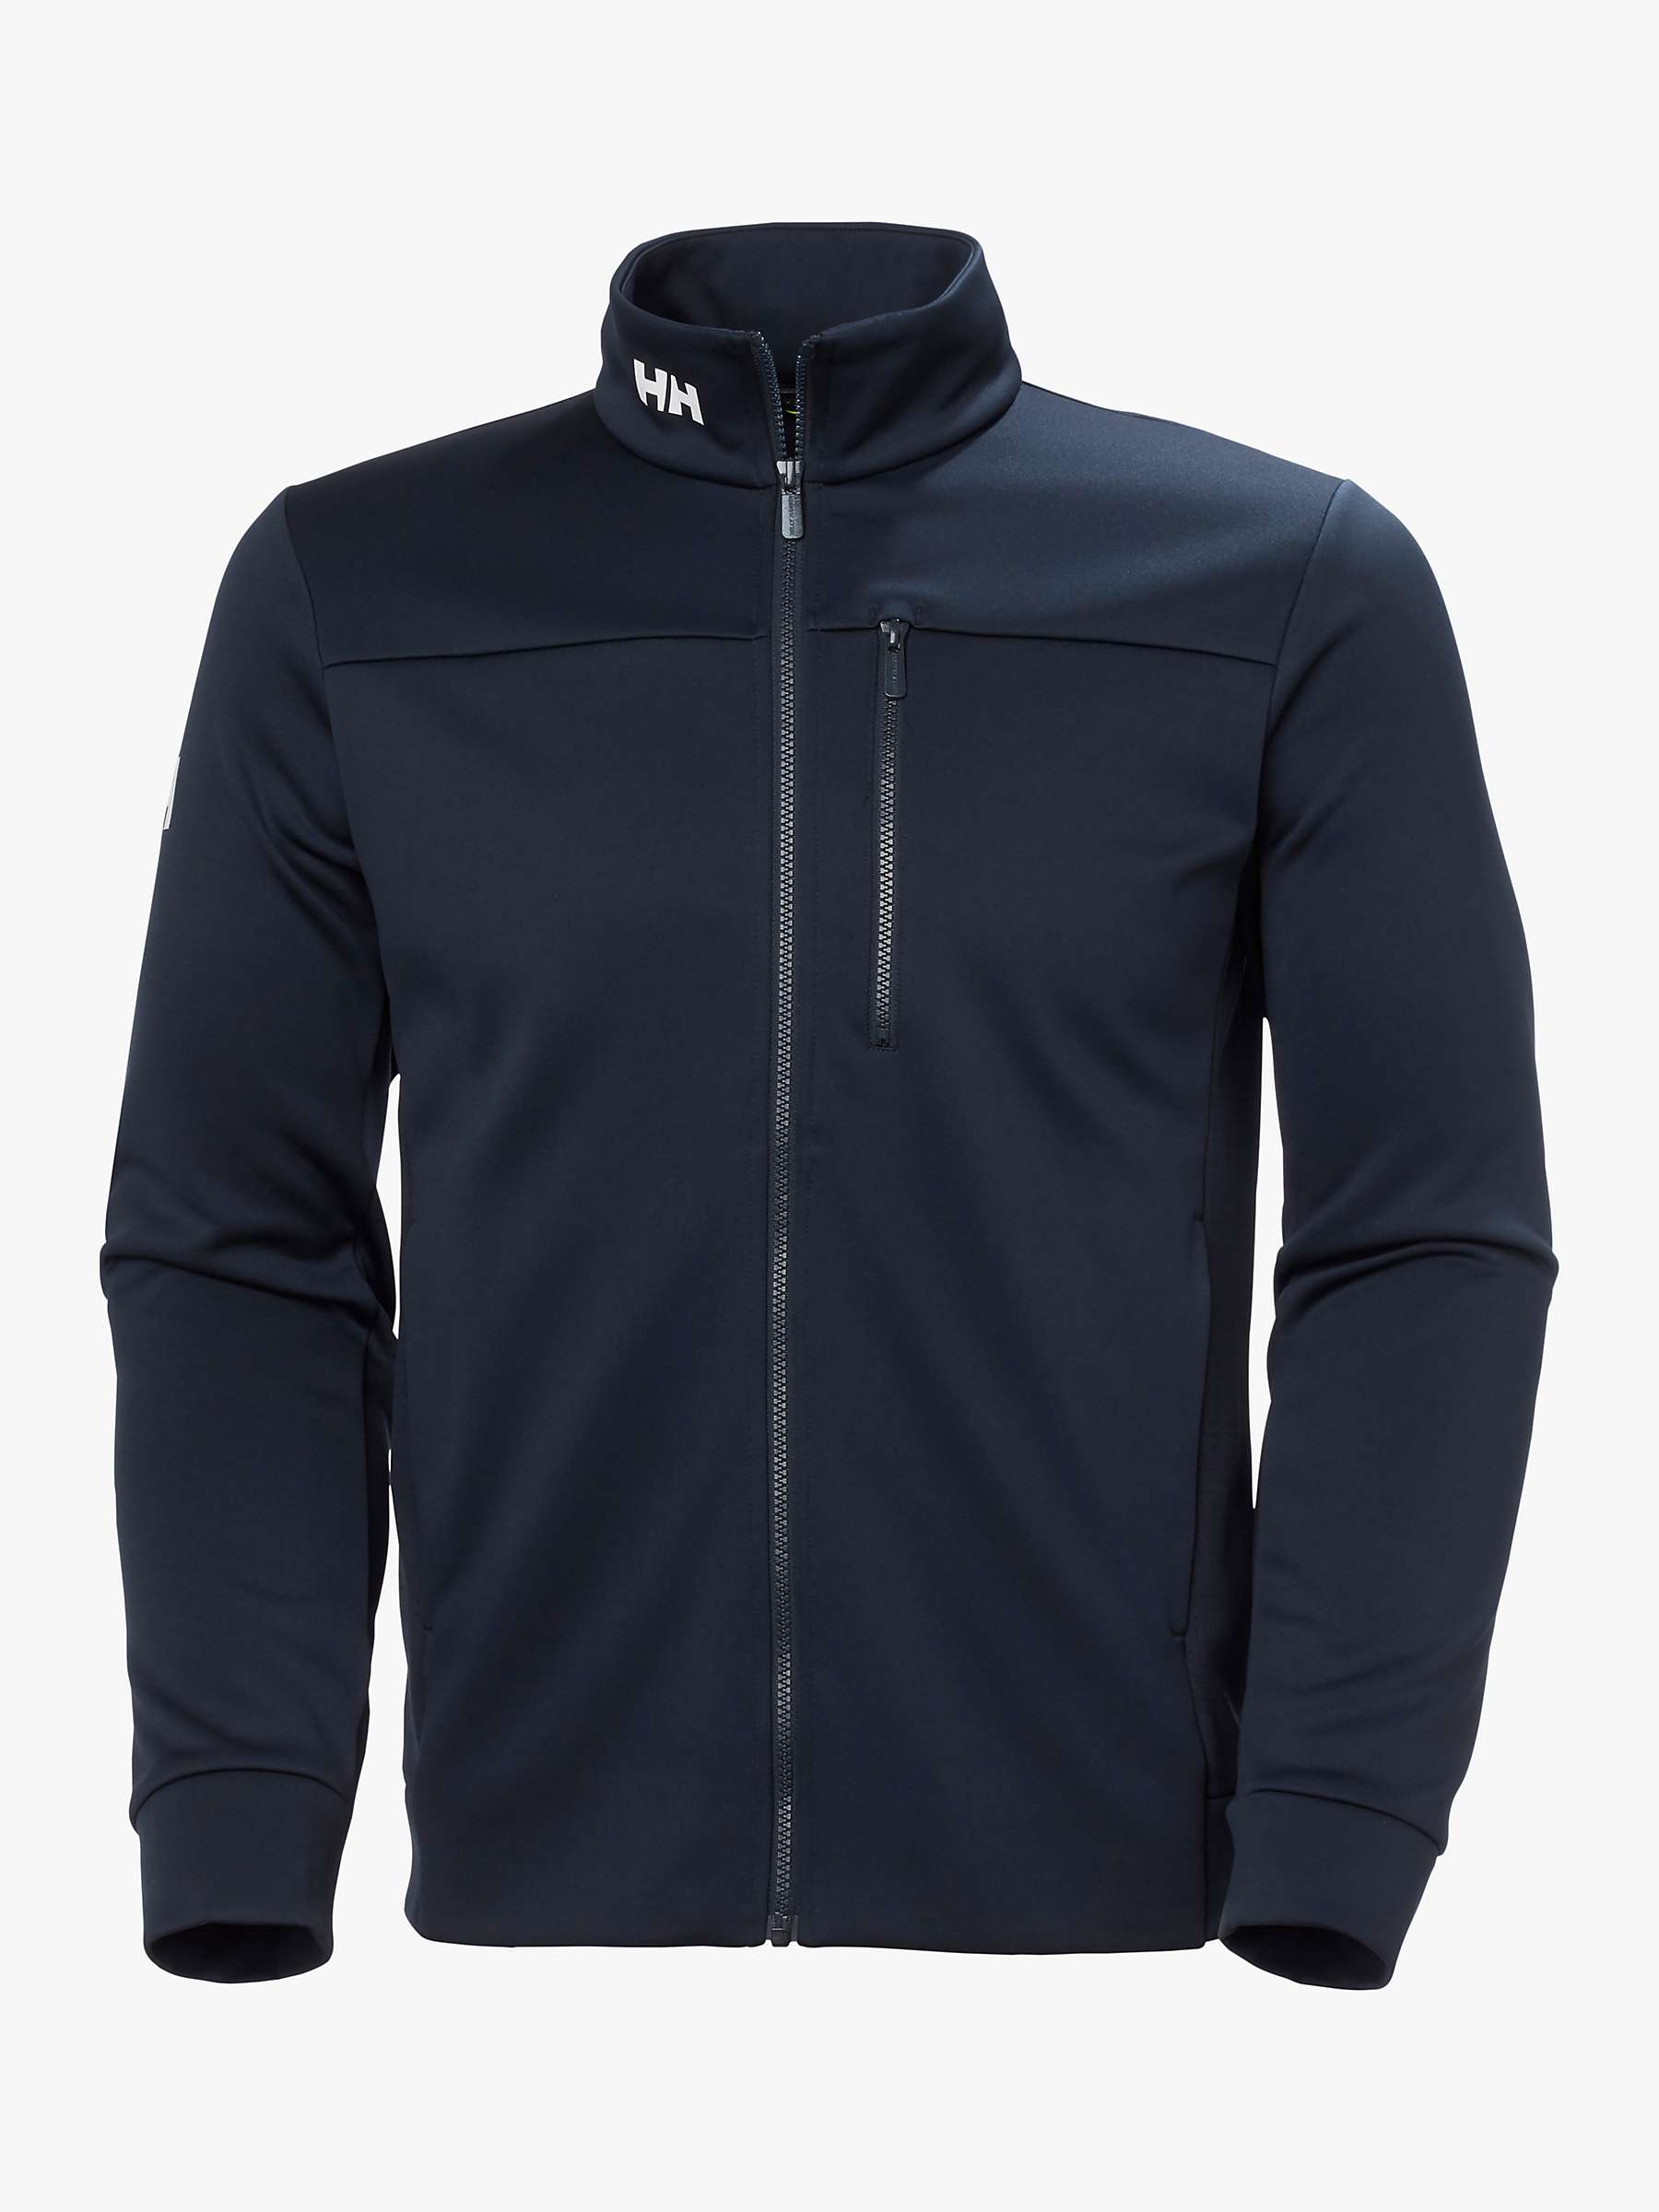 Buy Helly Hansen Crew Full-Zip Men's Fleece Jacket, Navy Online at johnlewis.com